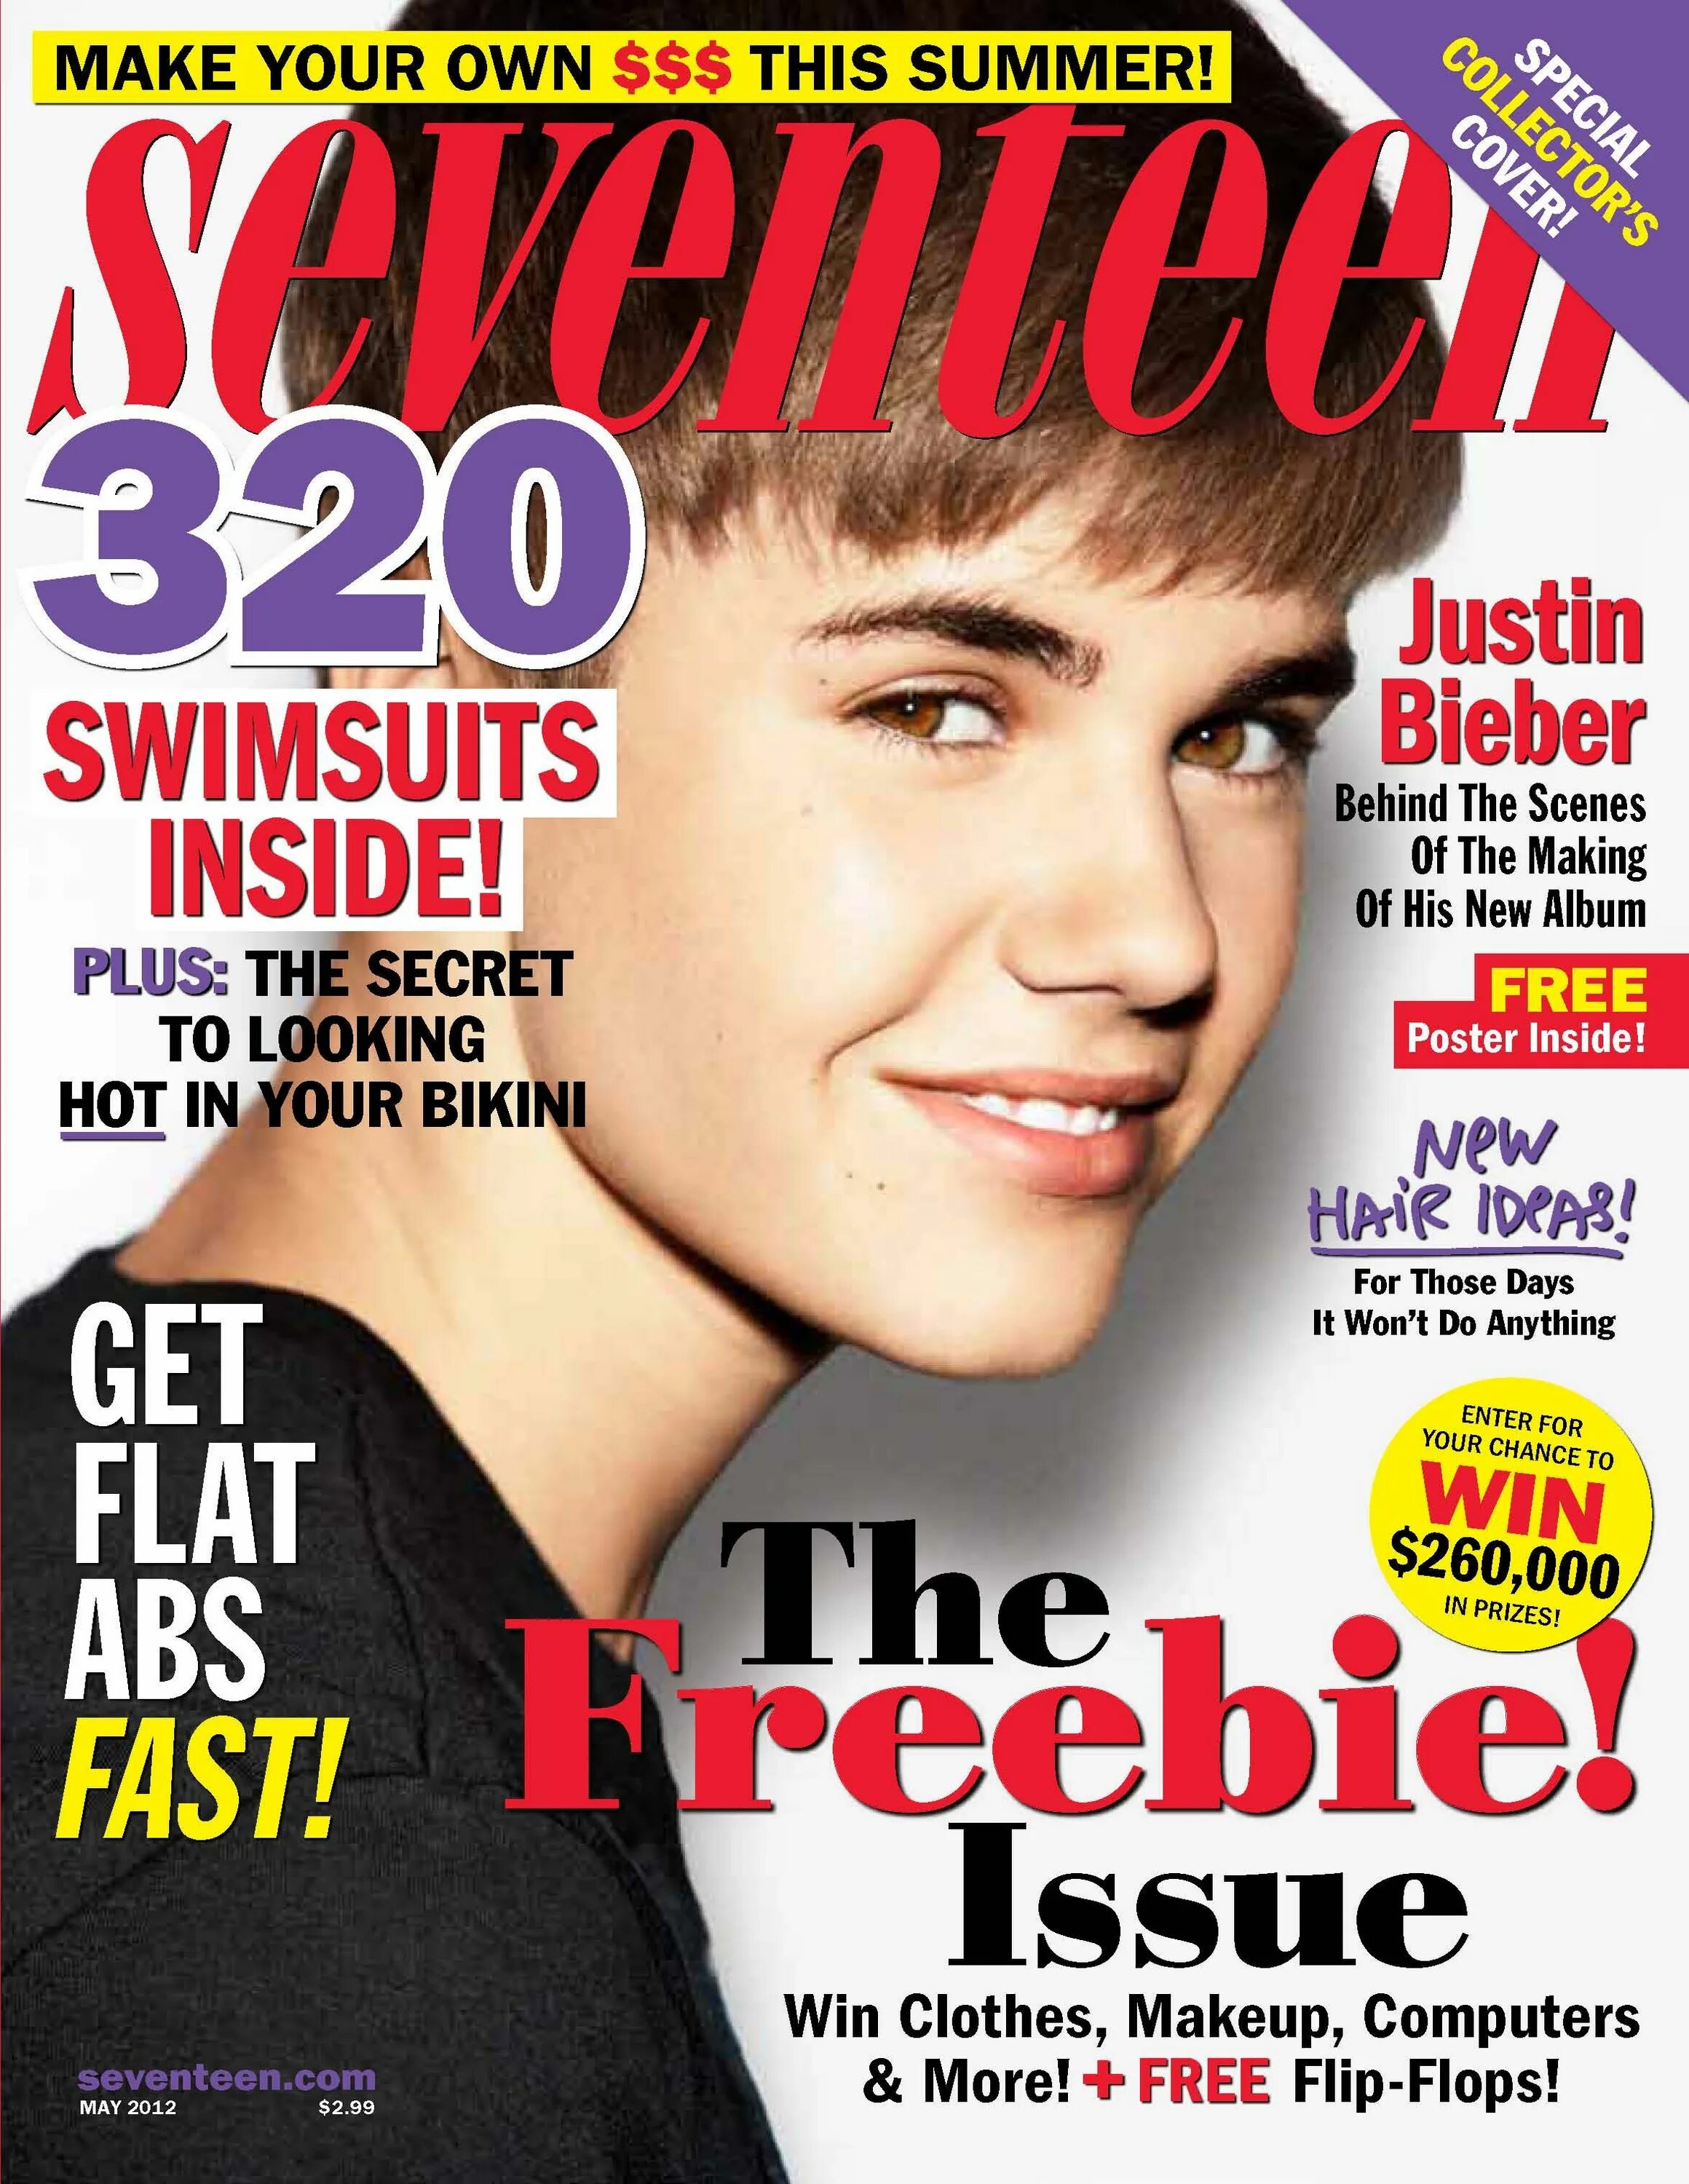 Justin Bieber 2012 обложка. Джастин Бибер журнал. Обложка для журнала. Обложки популярных журналов.